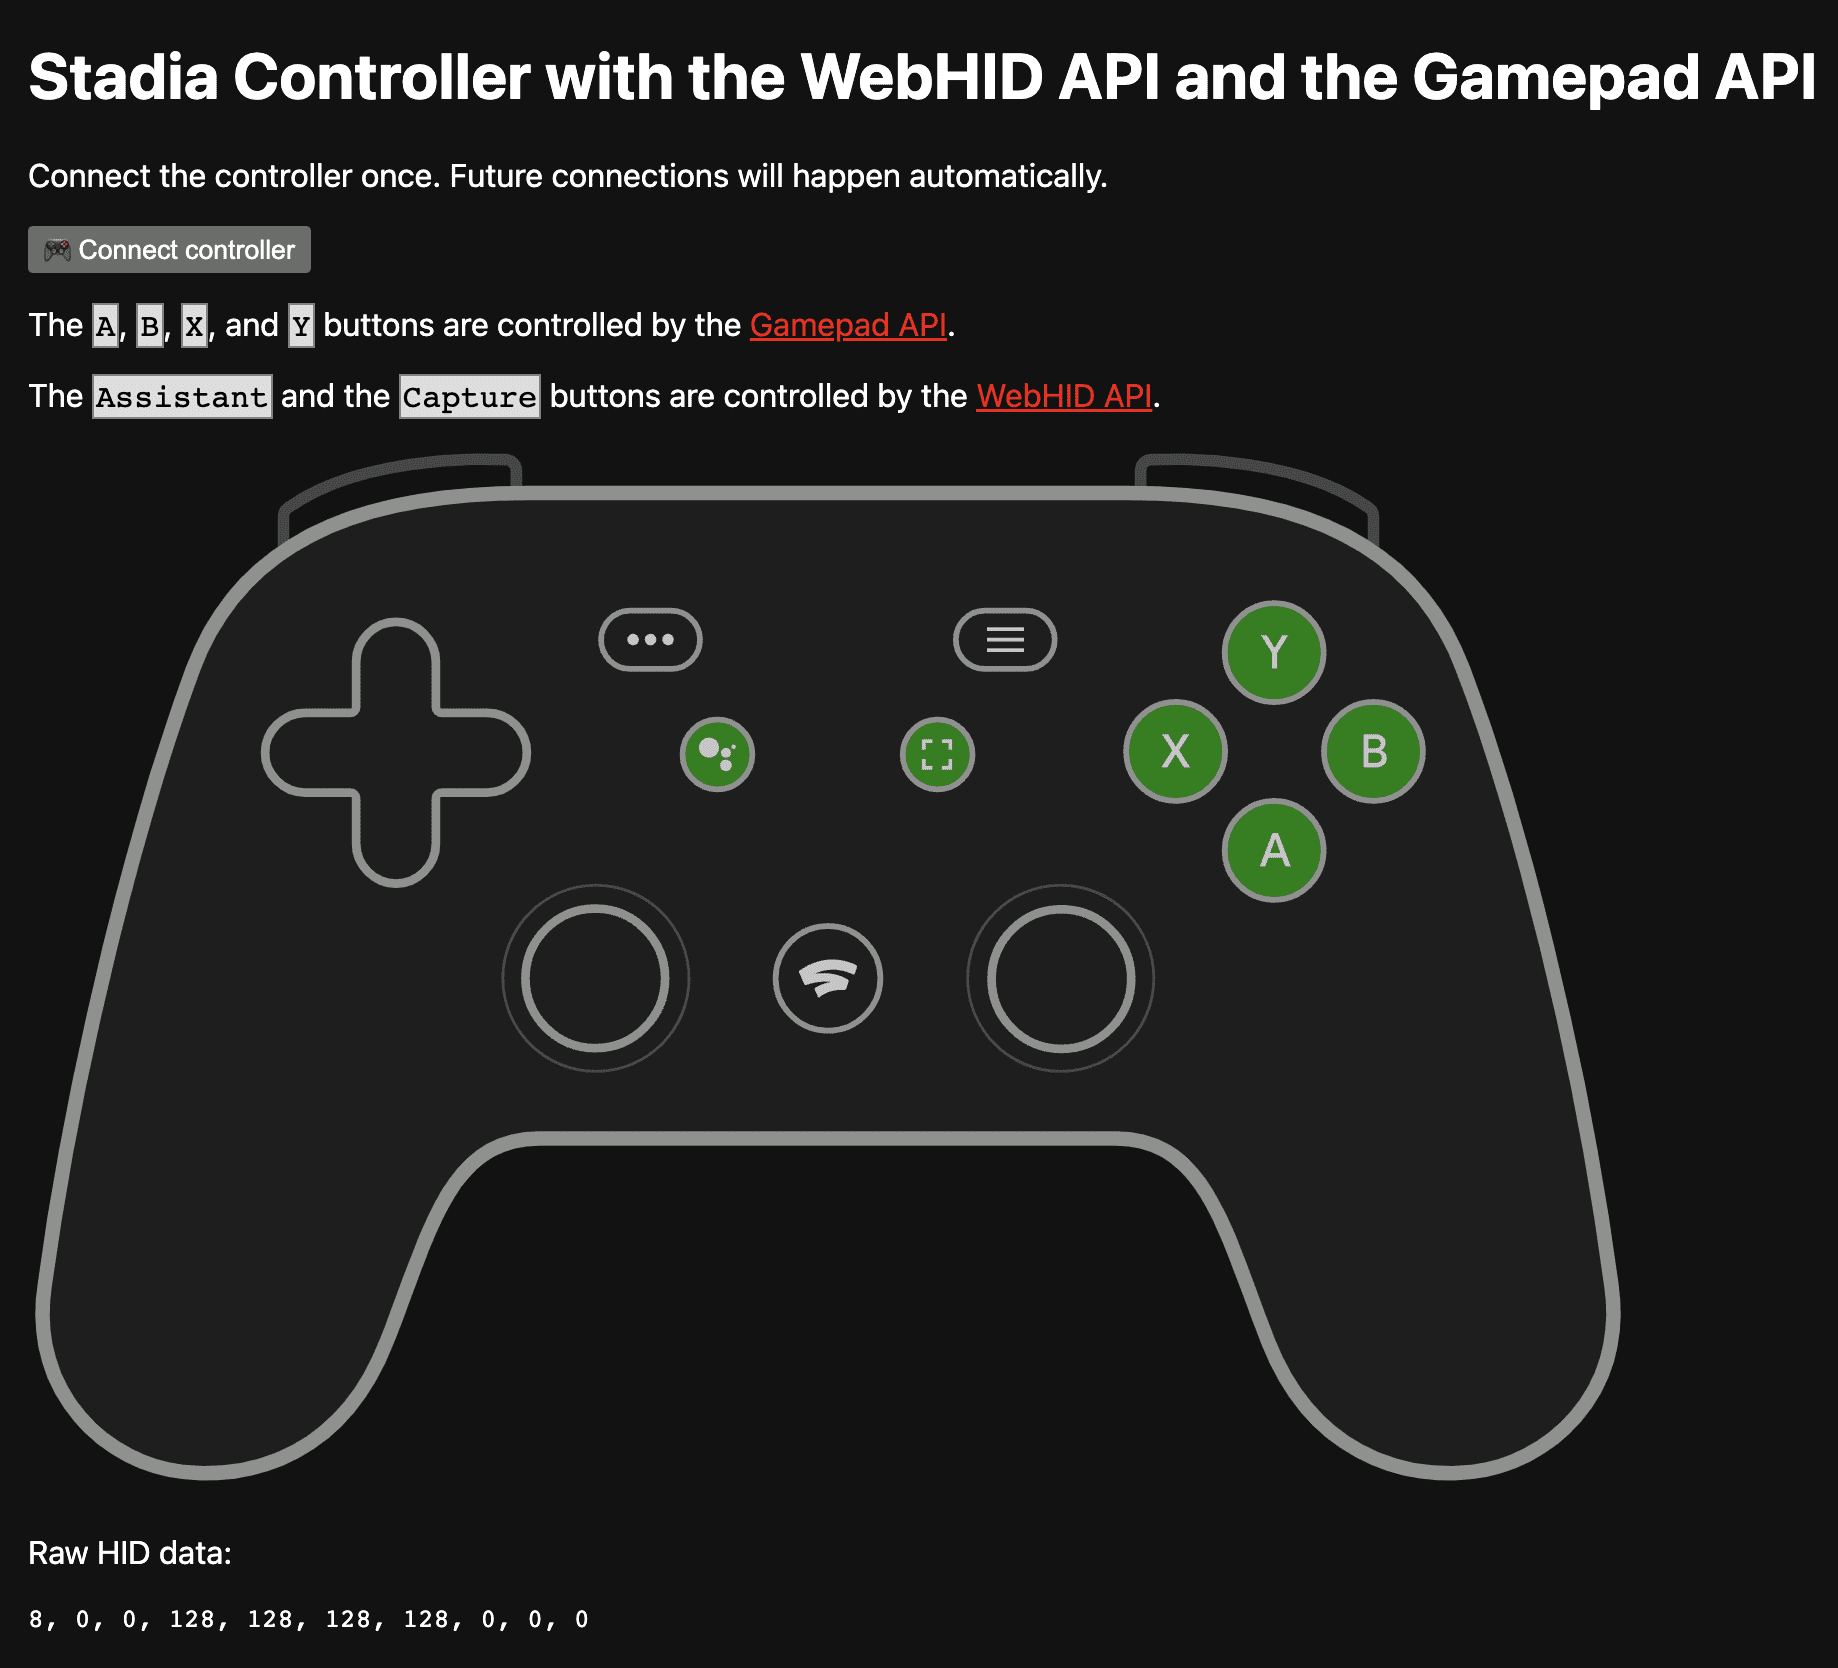 برنامه نمایشی در https://stadia-controller-webhid-gamepad.glitch.me/ نشان می دهد که دکمه های A، B، X و Y توسط Gamepad API کنترل می شوند و دکمه های Assistant و Capture توسط WebHID API.